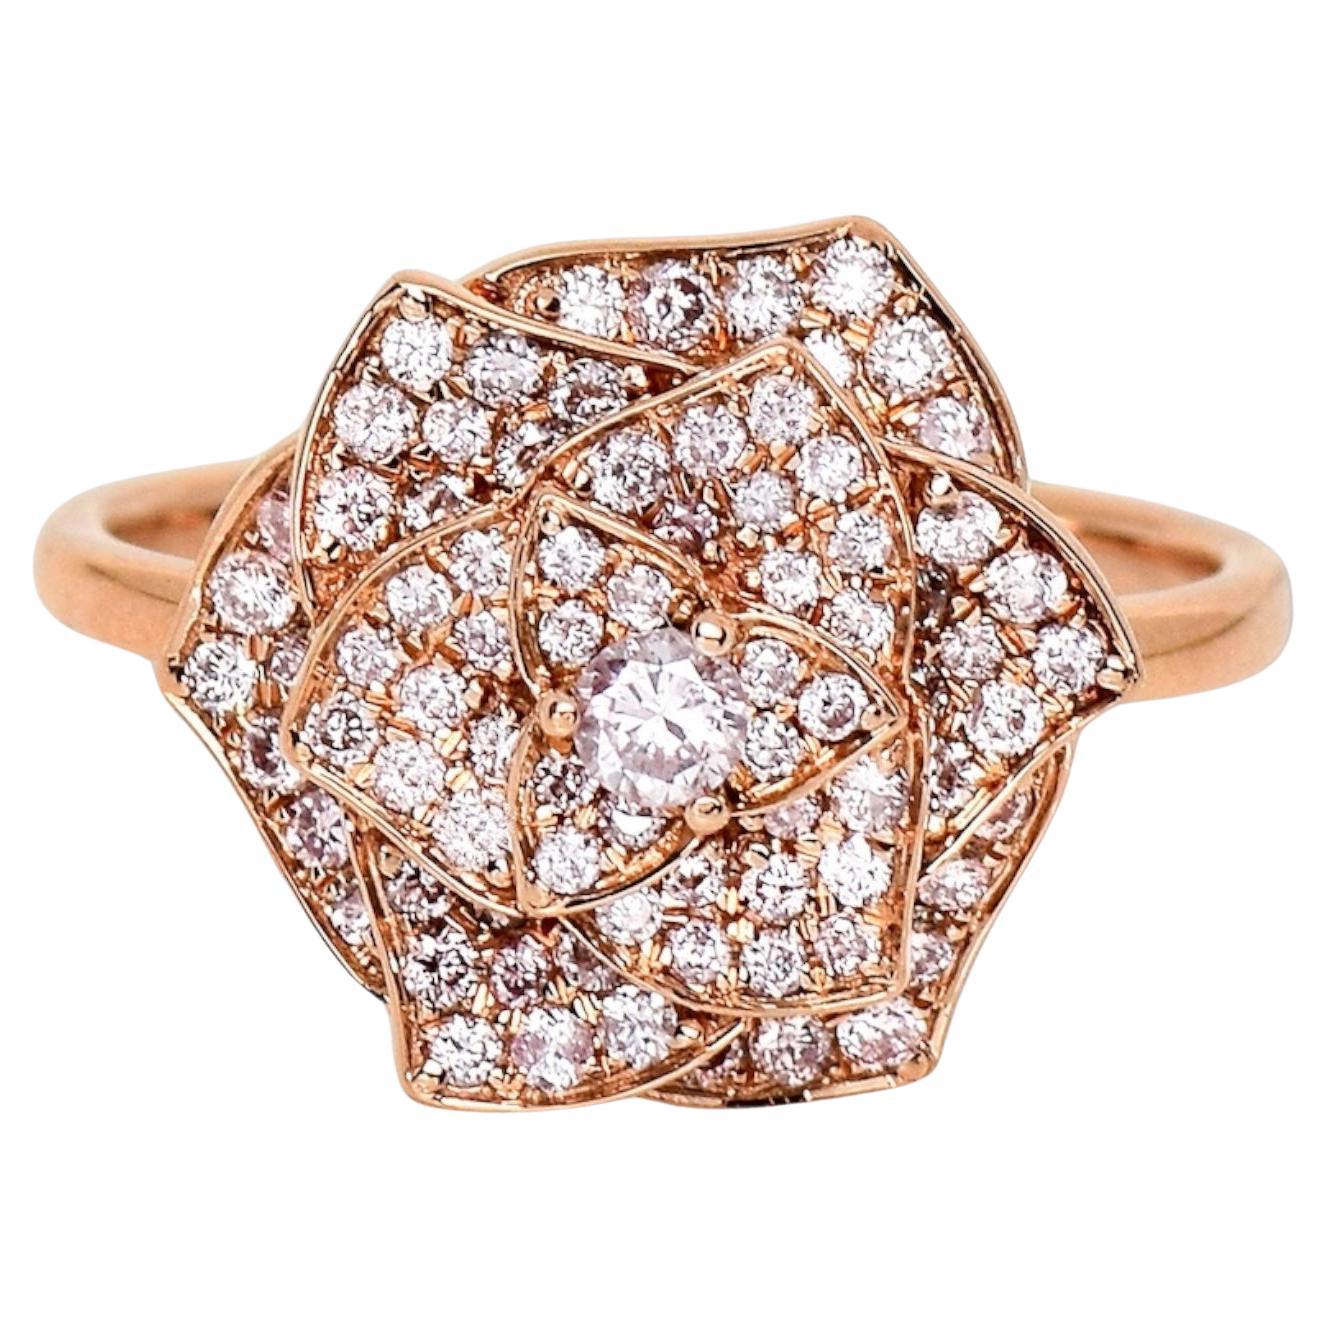 IGI 14K 0.60 ct Natural Pink Diamonds Rose Design Antique Art Deco Ring